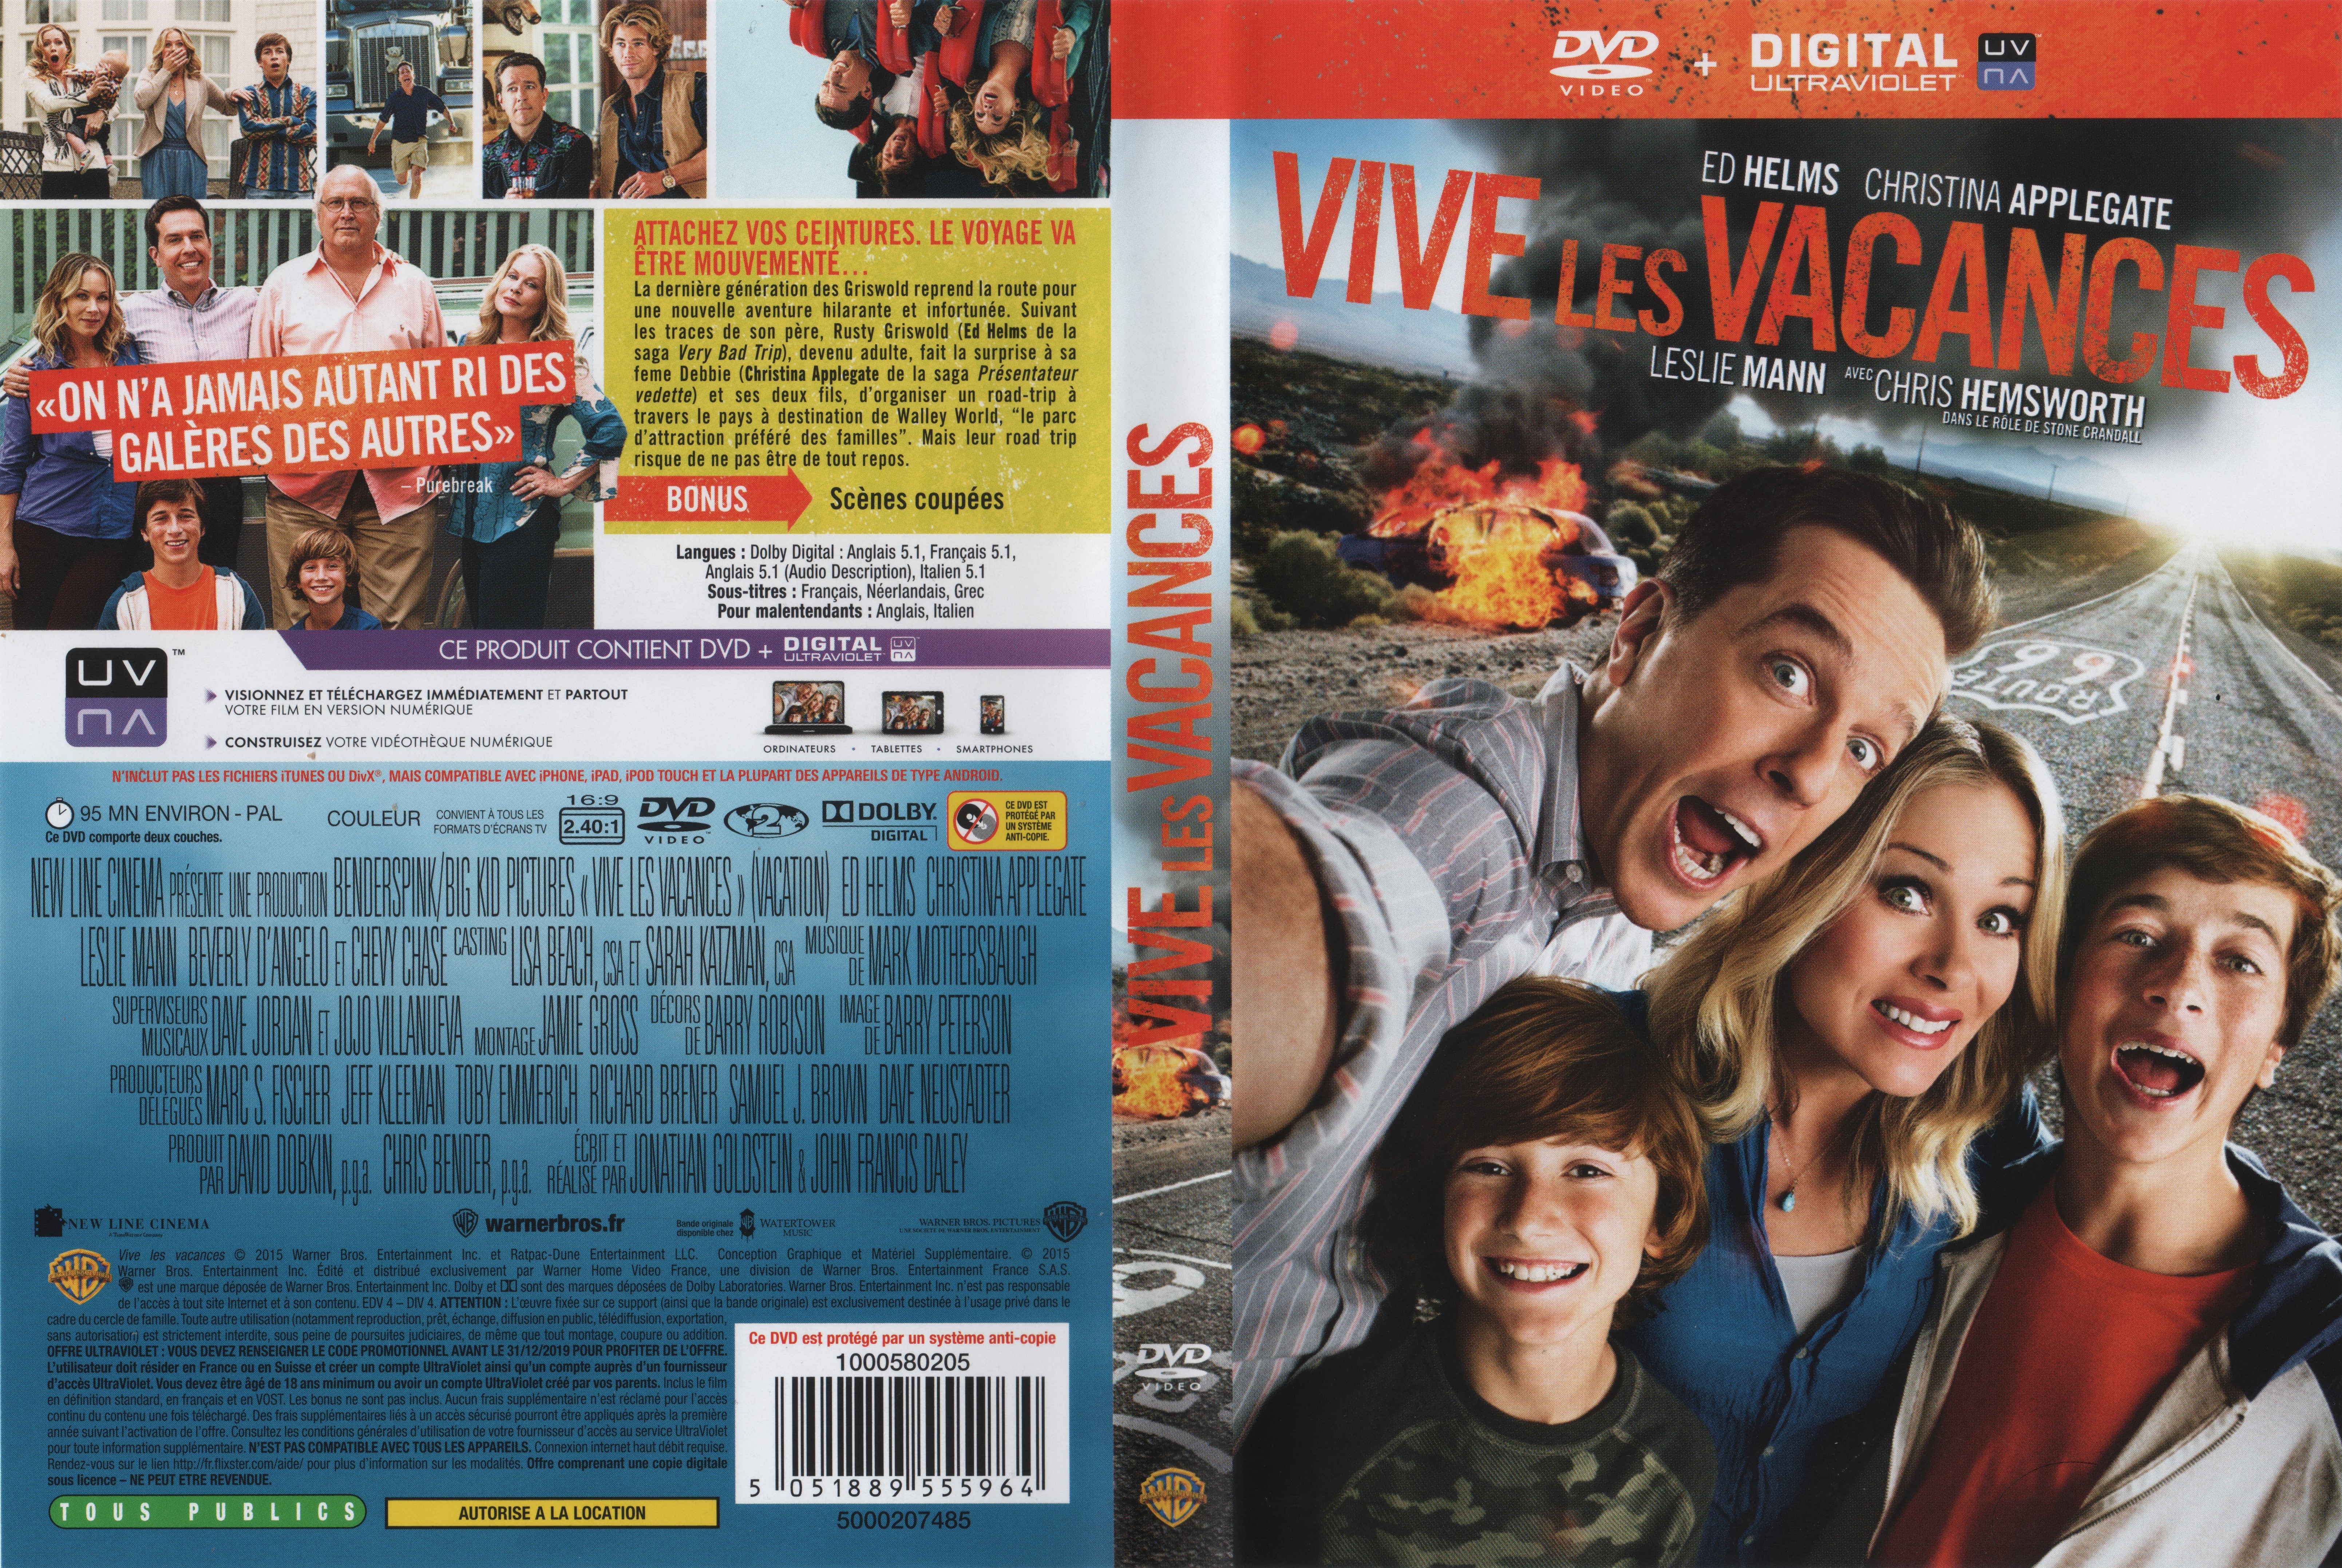 Jaquette DVD Vive les vacances